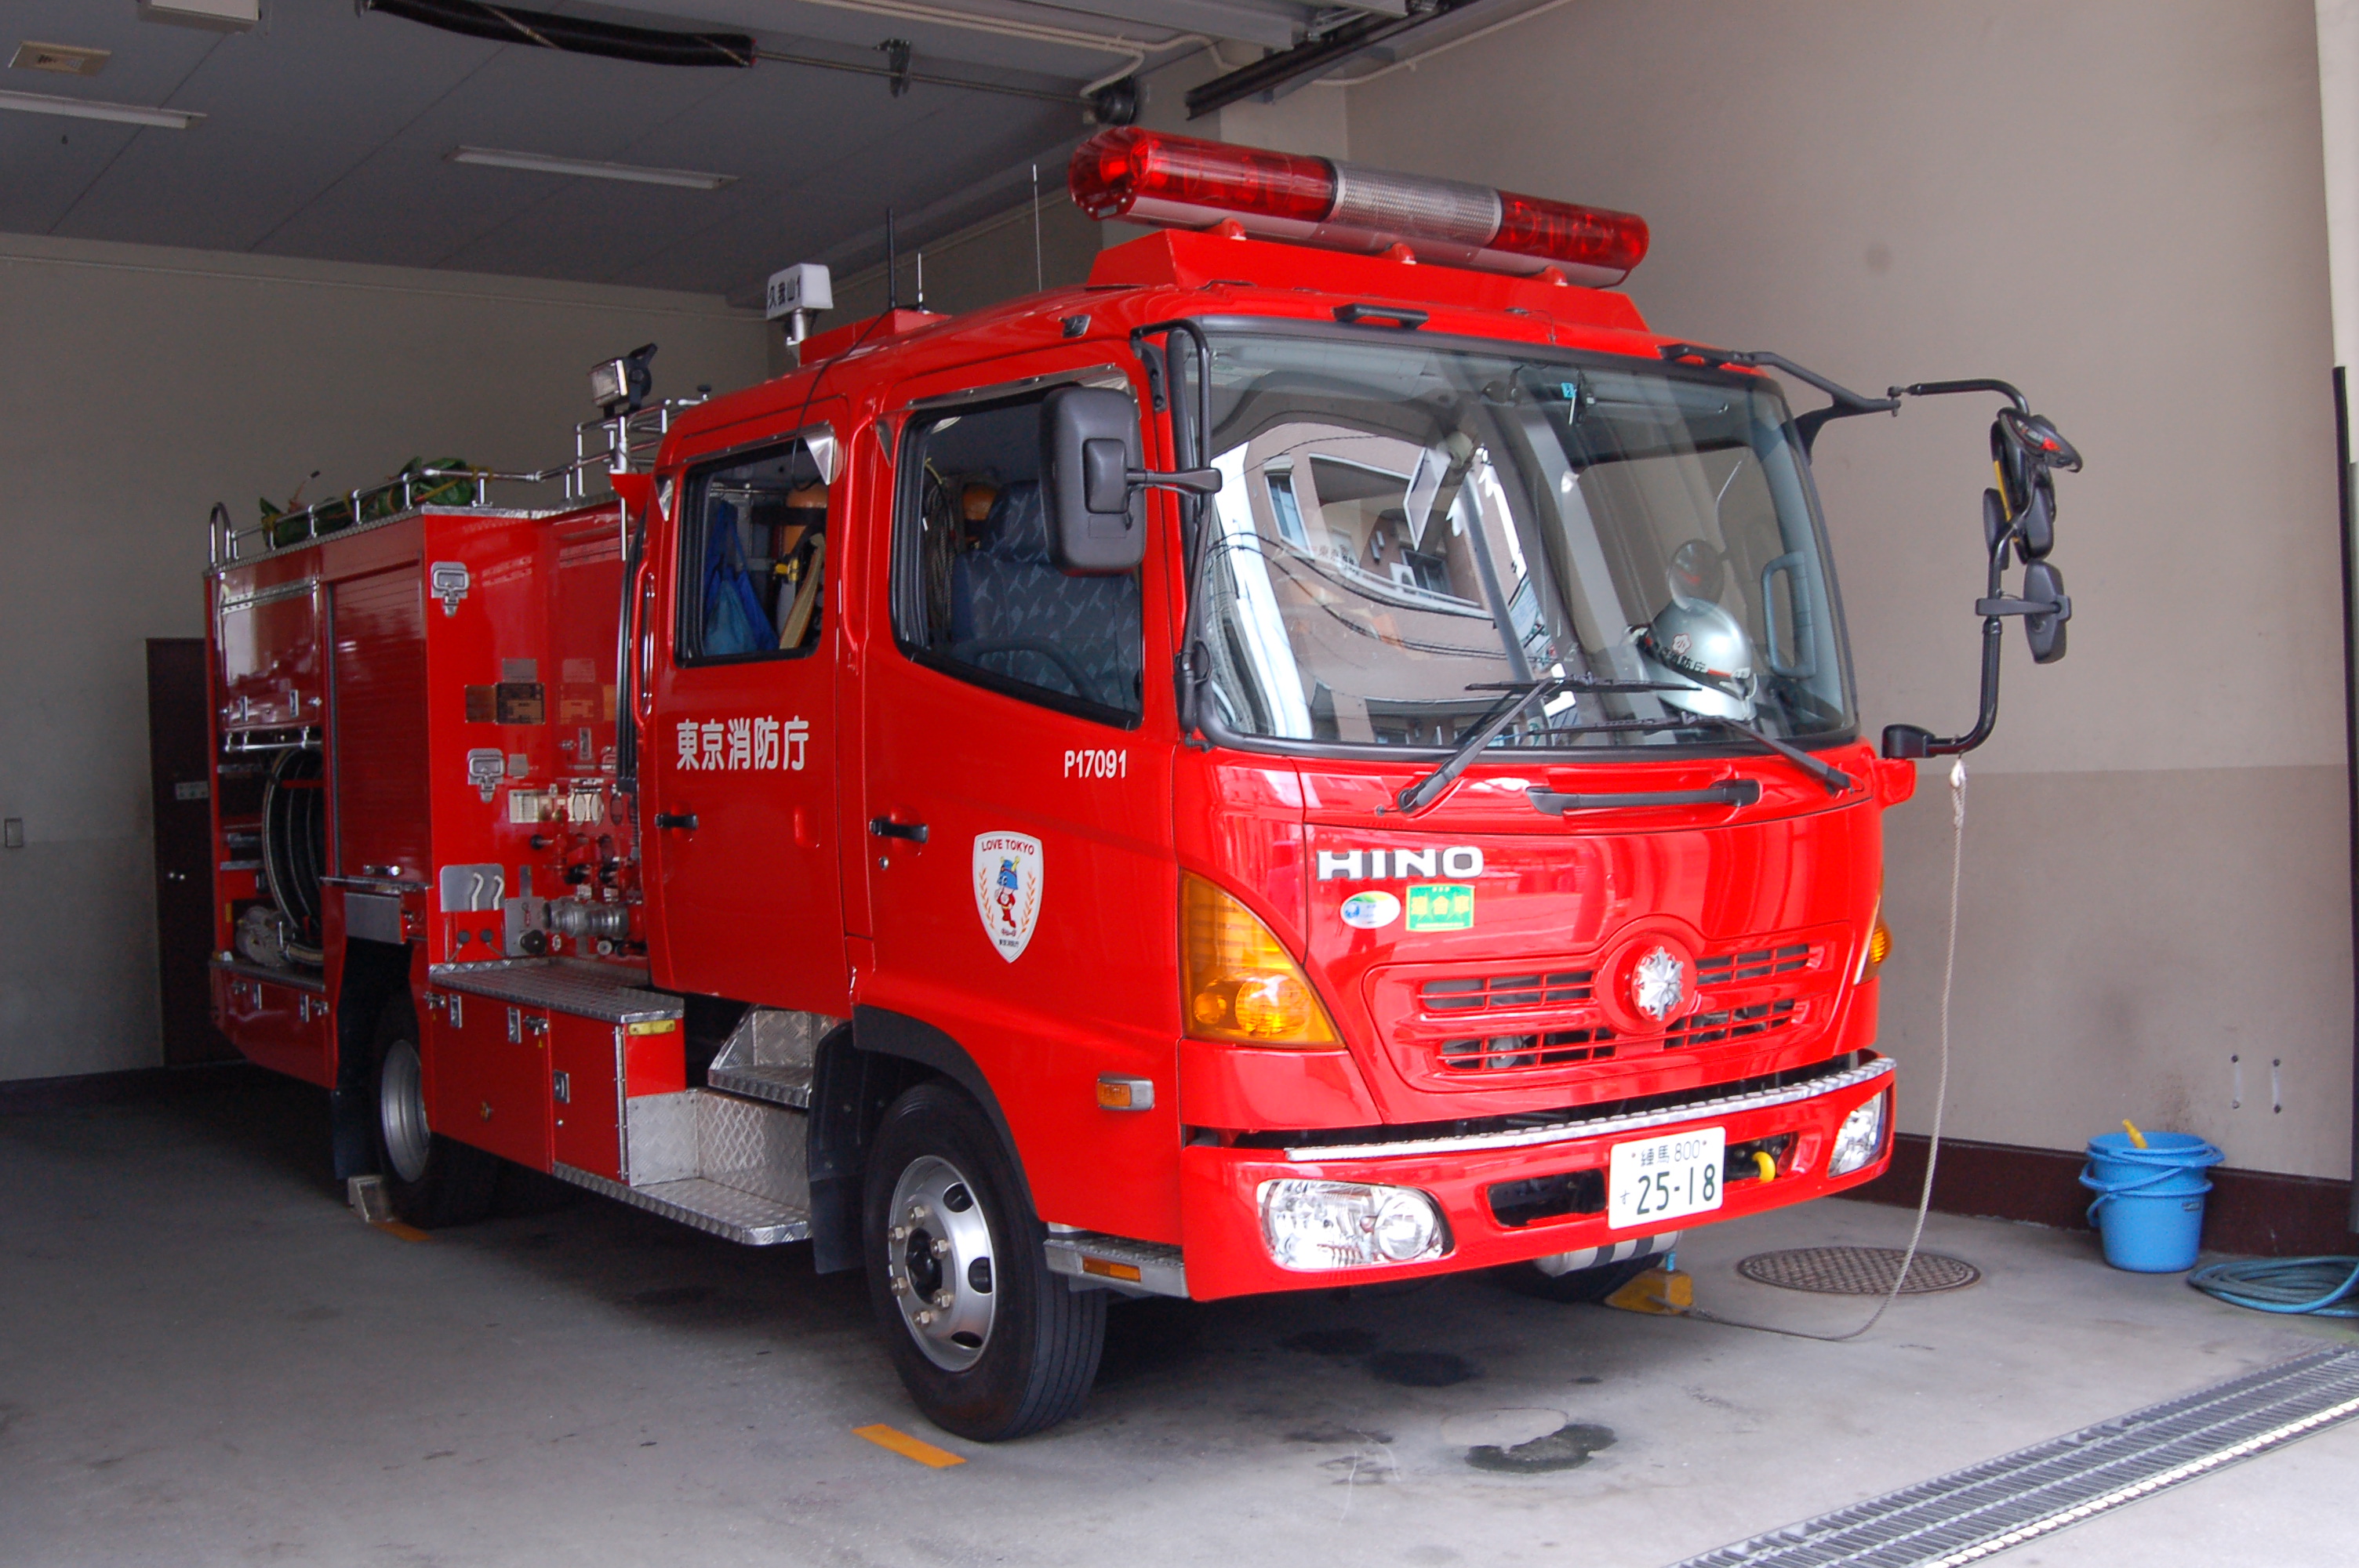 日本の消防車 - Wikipedia